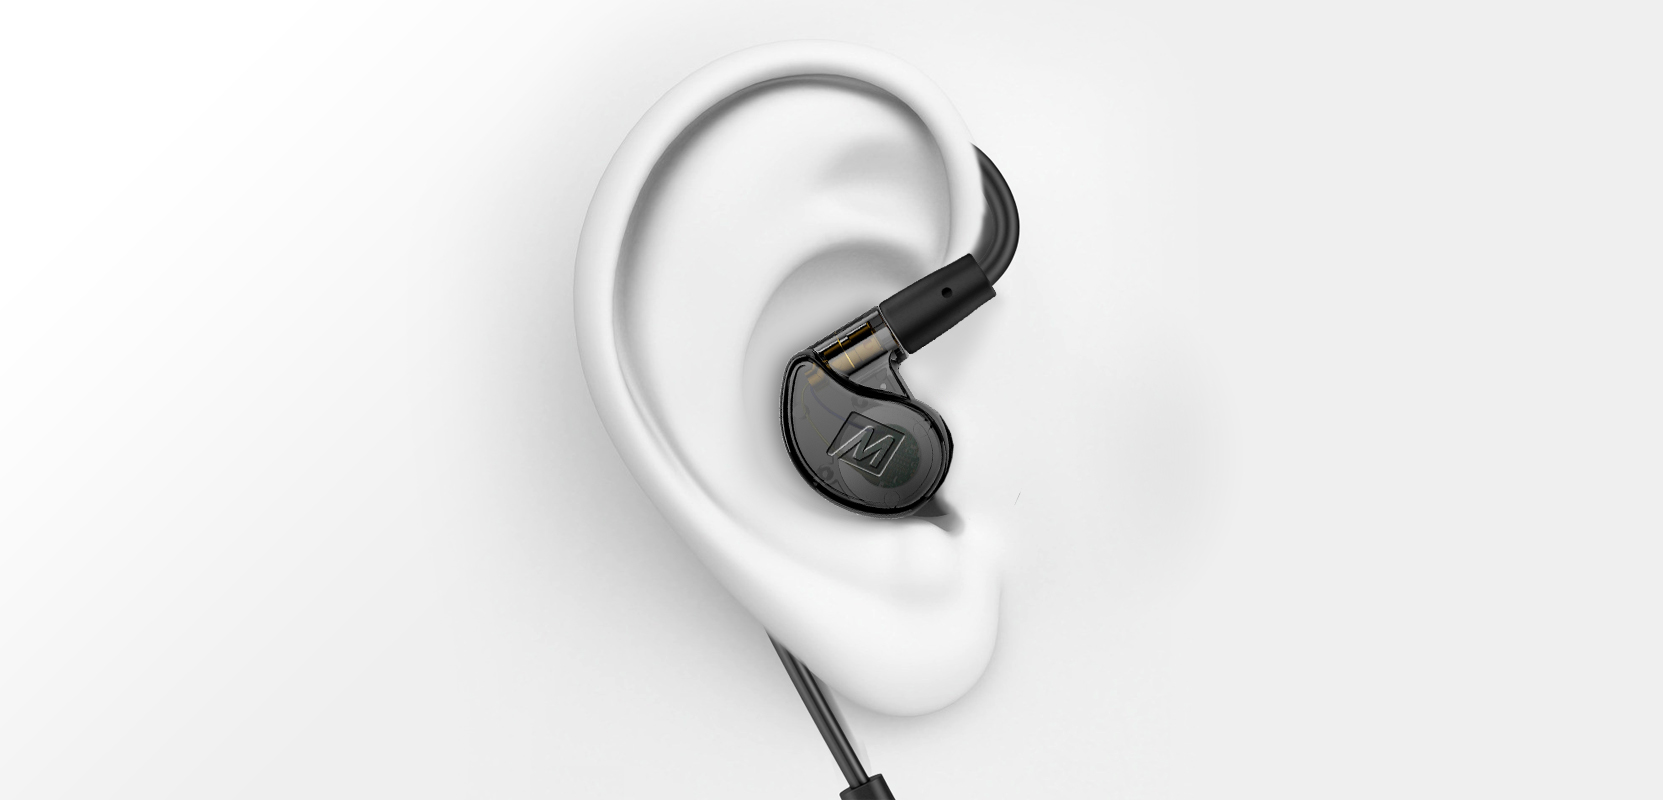 M6 PRO Wired + Wireless In Ear Monitors Bundle